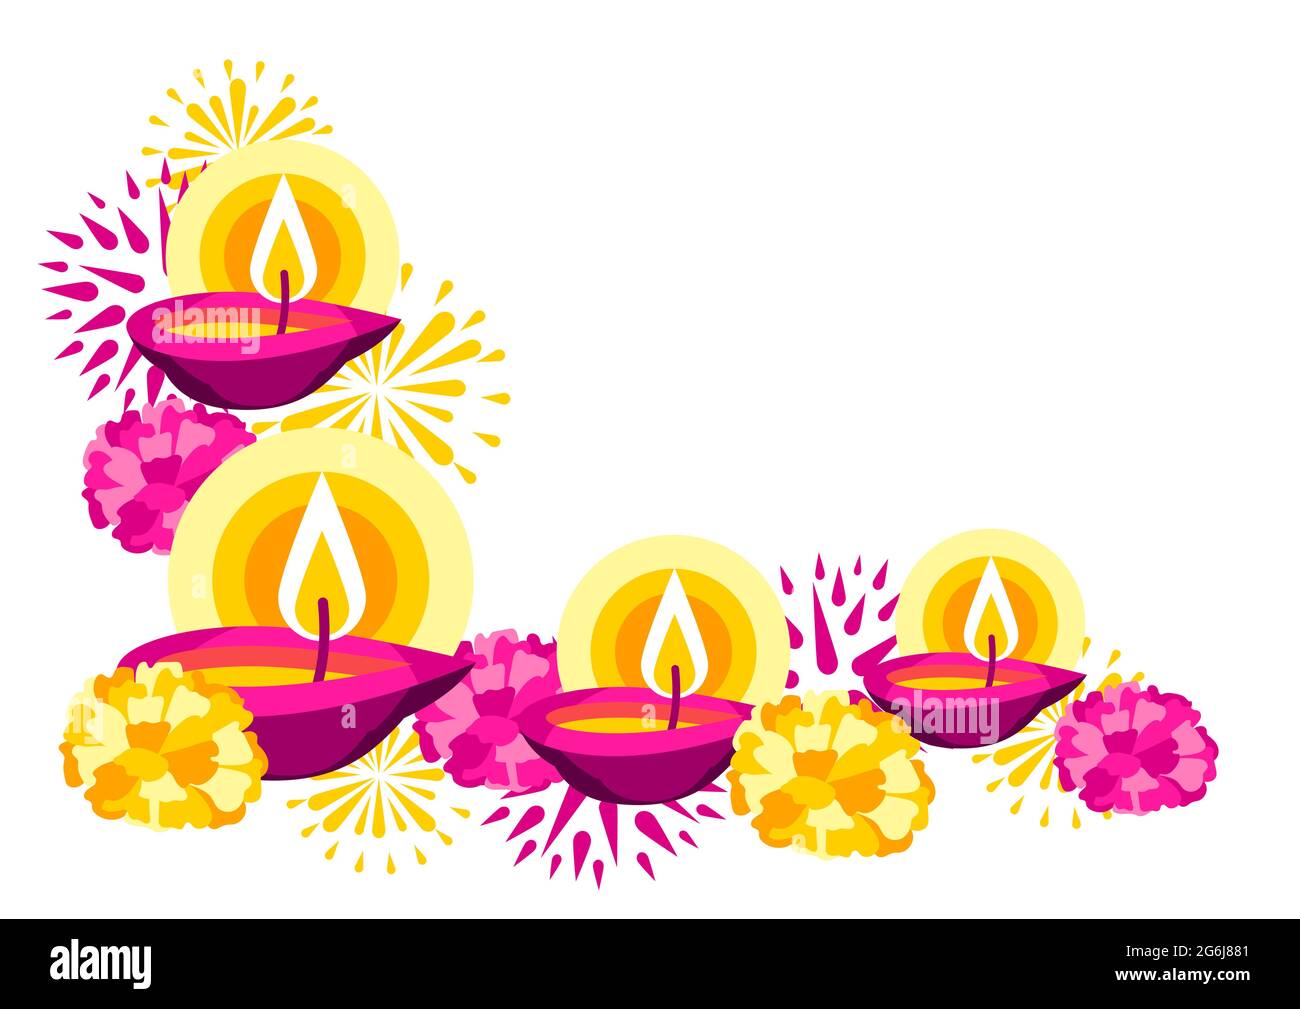 Những lời chúc tốt đẹp nhất của lễ hội Diwali sẽ đến với bạn bằng bức ảnh Happy Diwali greeting card. Với thiết kế độc đáo và tinh tế, bức ảnh sẽ gửi gắm đến người nhận những lời chúc ý nghĩa nhất.